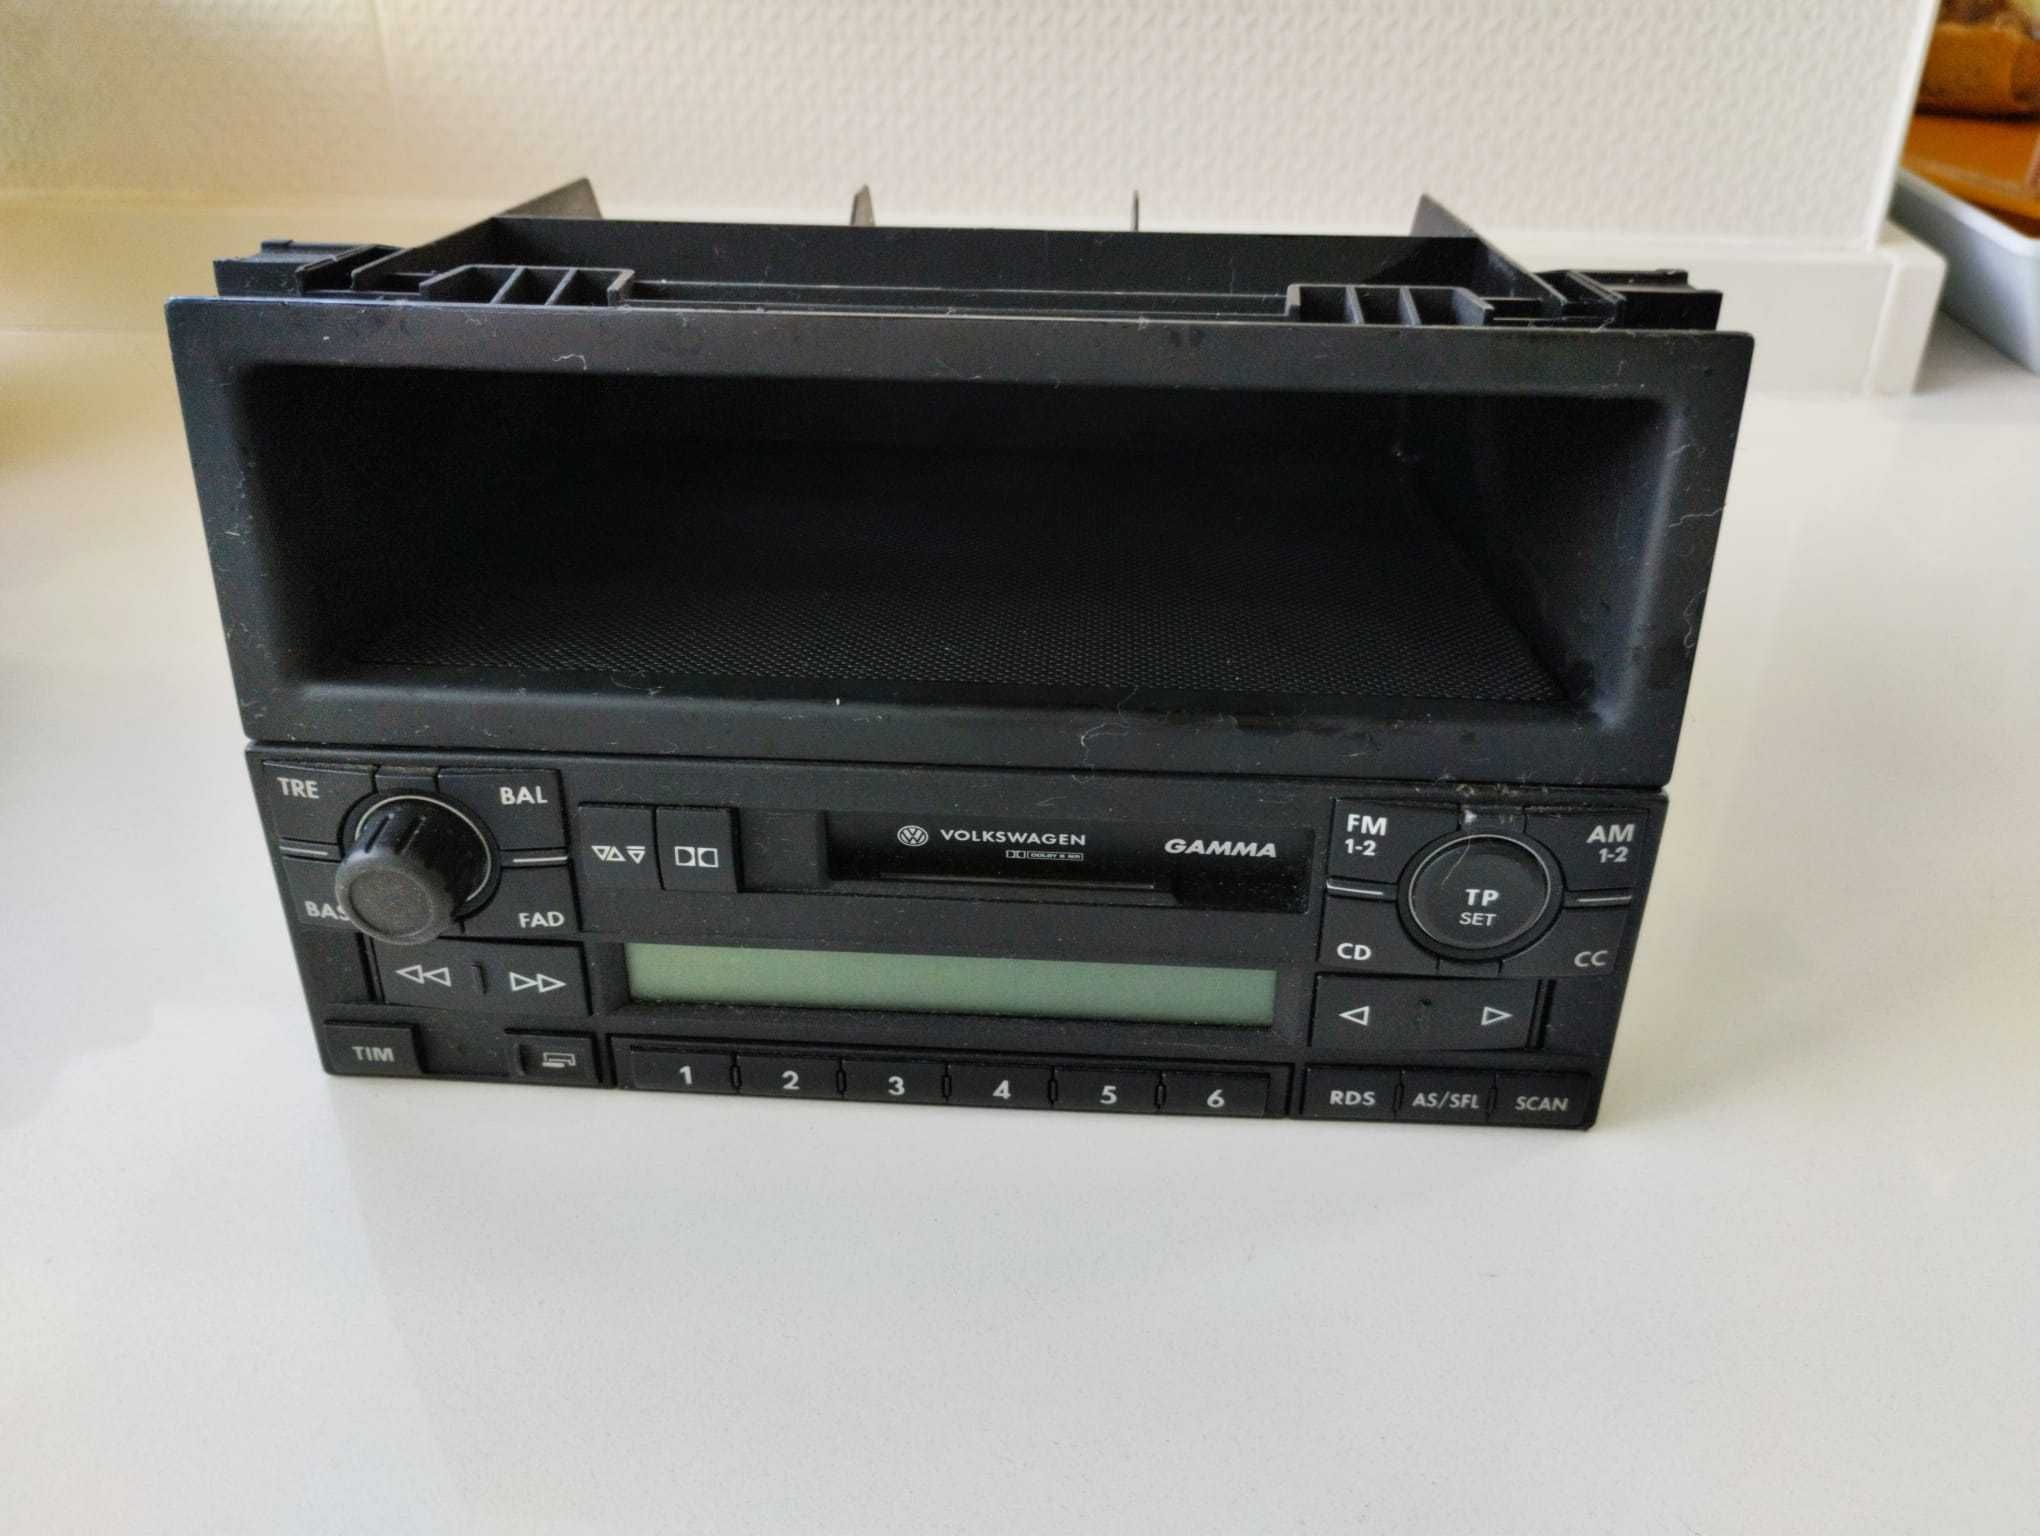 Rádio Volkswagen Gamma Original com leitor caixa de 6 CD's incluído